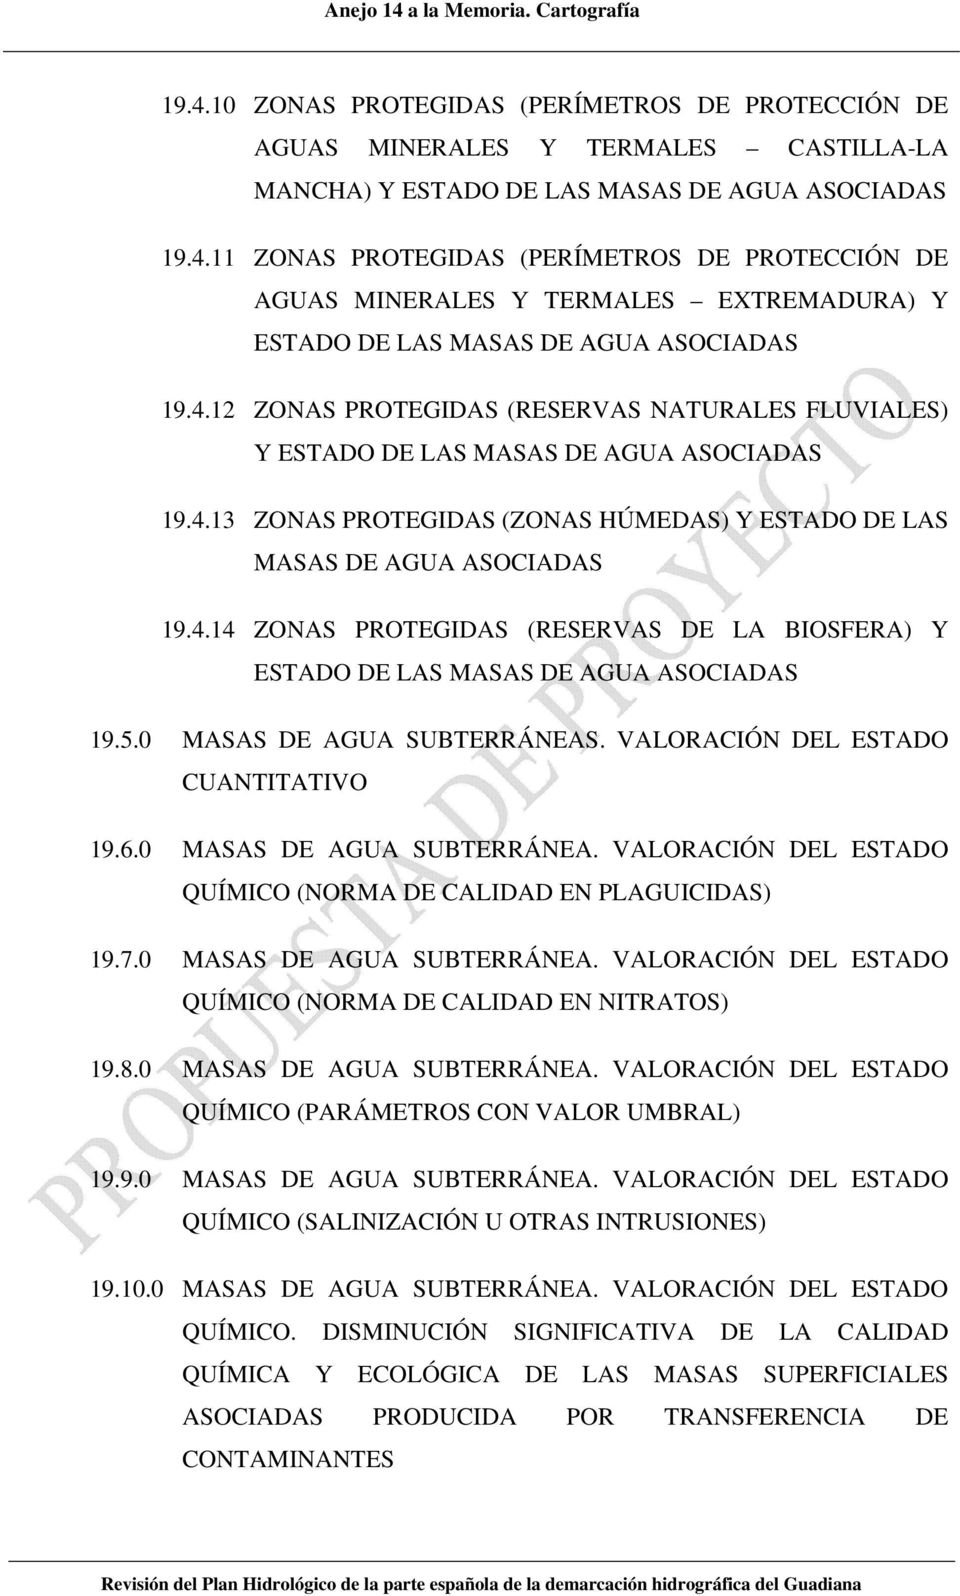 5.0 MASAS DE AGUA SUBTERRÁNEAS. VALORACIÓN DEL ESTADO CUANTITATIVO 19.6.0 MASAS DE AGUA SUBTERRÁNEA. VALORACIÓN DEL ESTADO QUÍMICO (NORMA DE CALIDAD EN PLAGUICIDAS) 19.7.0 MASAS DE AGUA SUBTERRÁNEA. VALORACIÓN DEL ESTADO QUÍMICO (NORMA DE CALIDAD EN NITRATOS) 19.